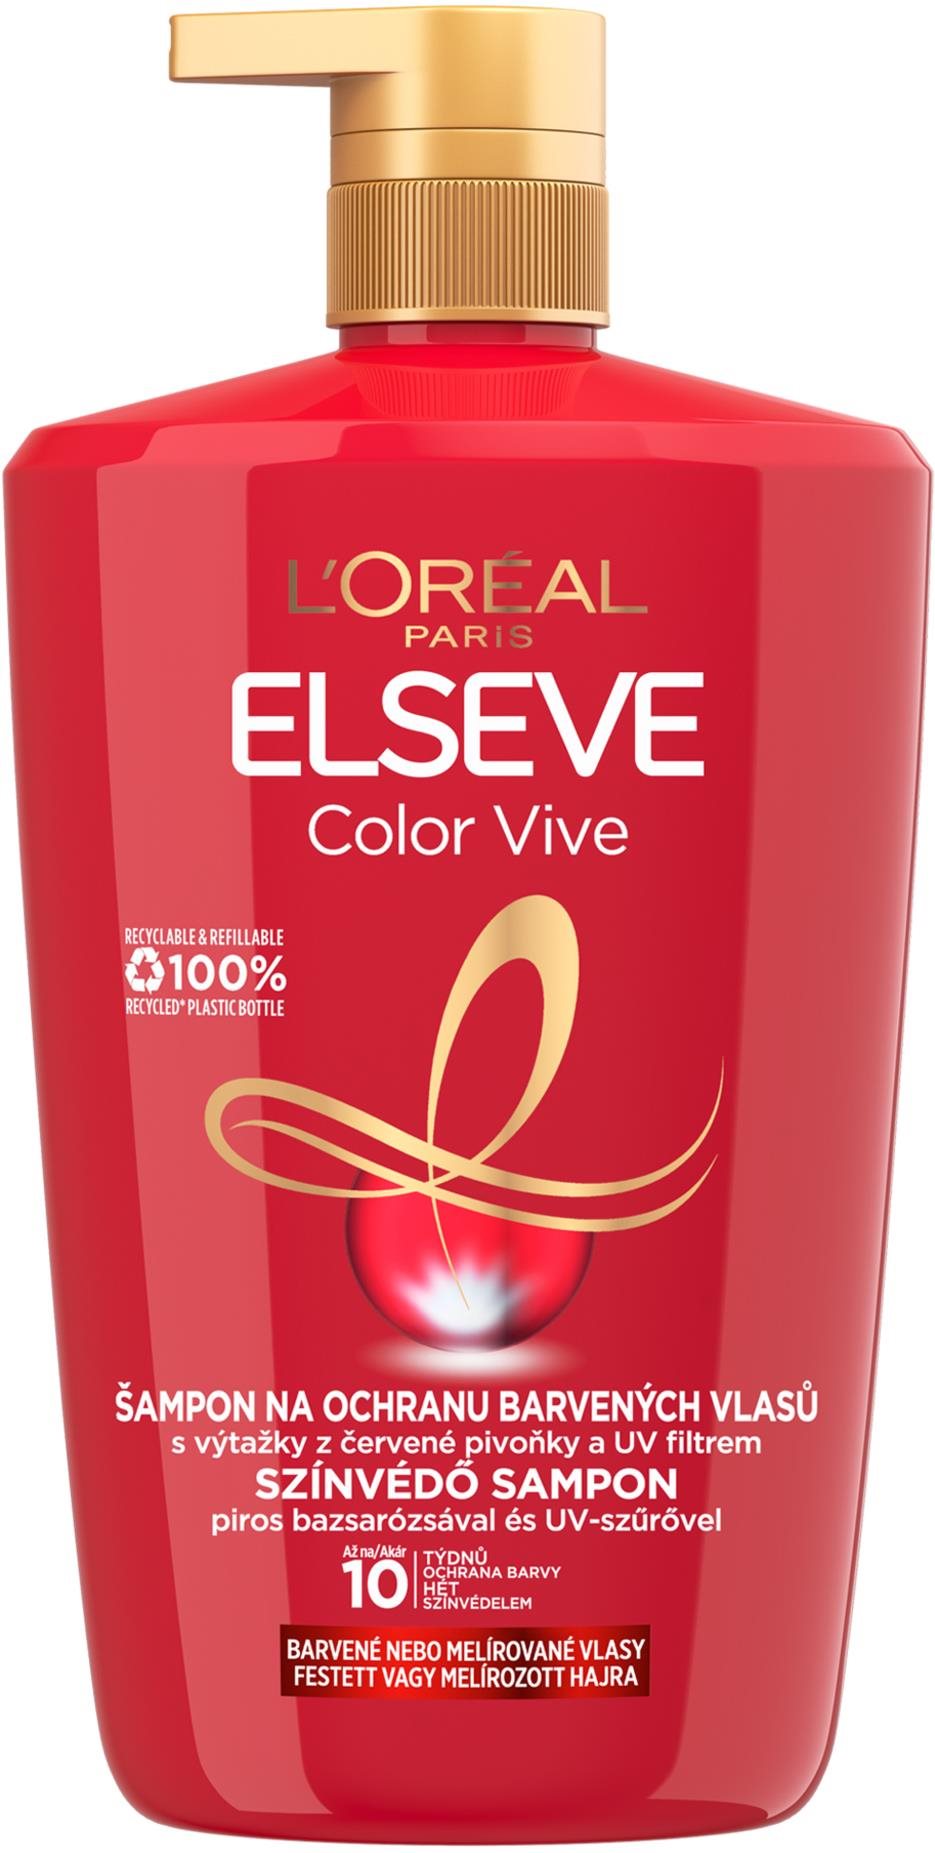 L'ORÉAL PARIS Elseve Color Vive Sampon 1000 ml